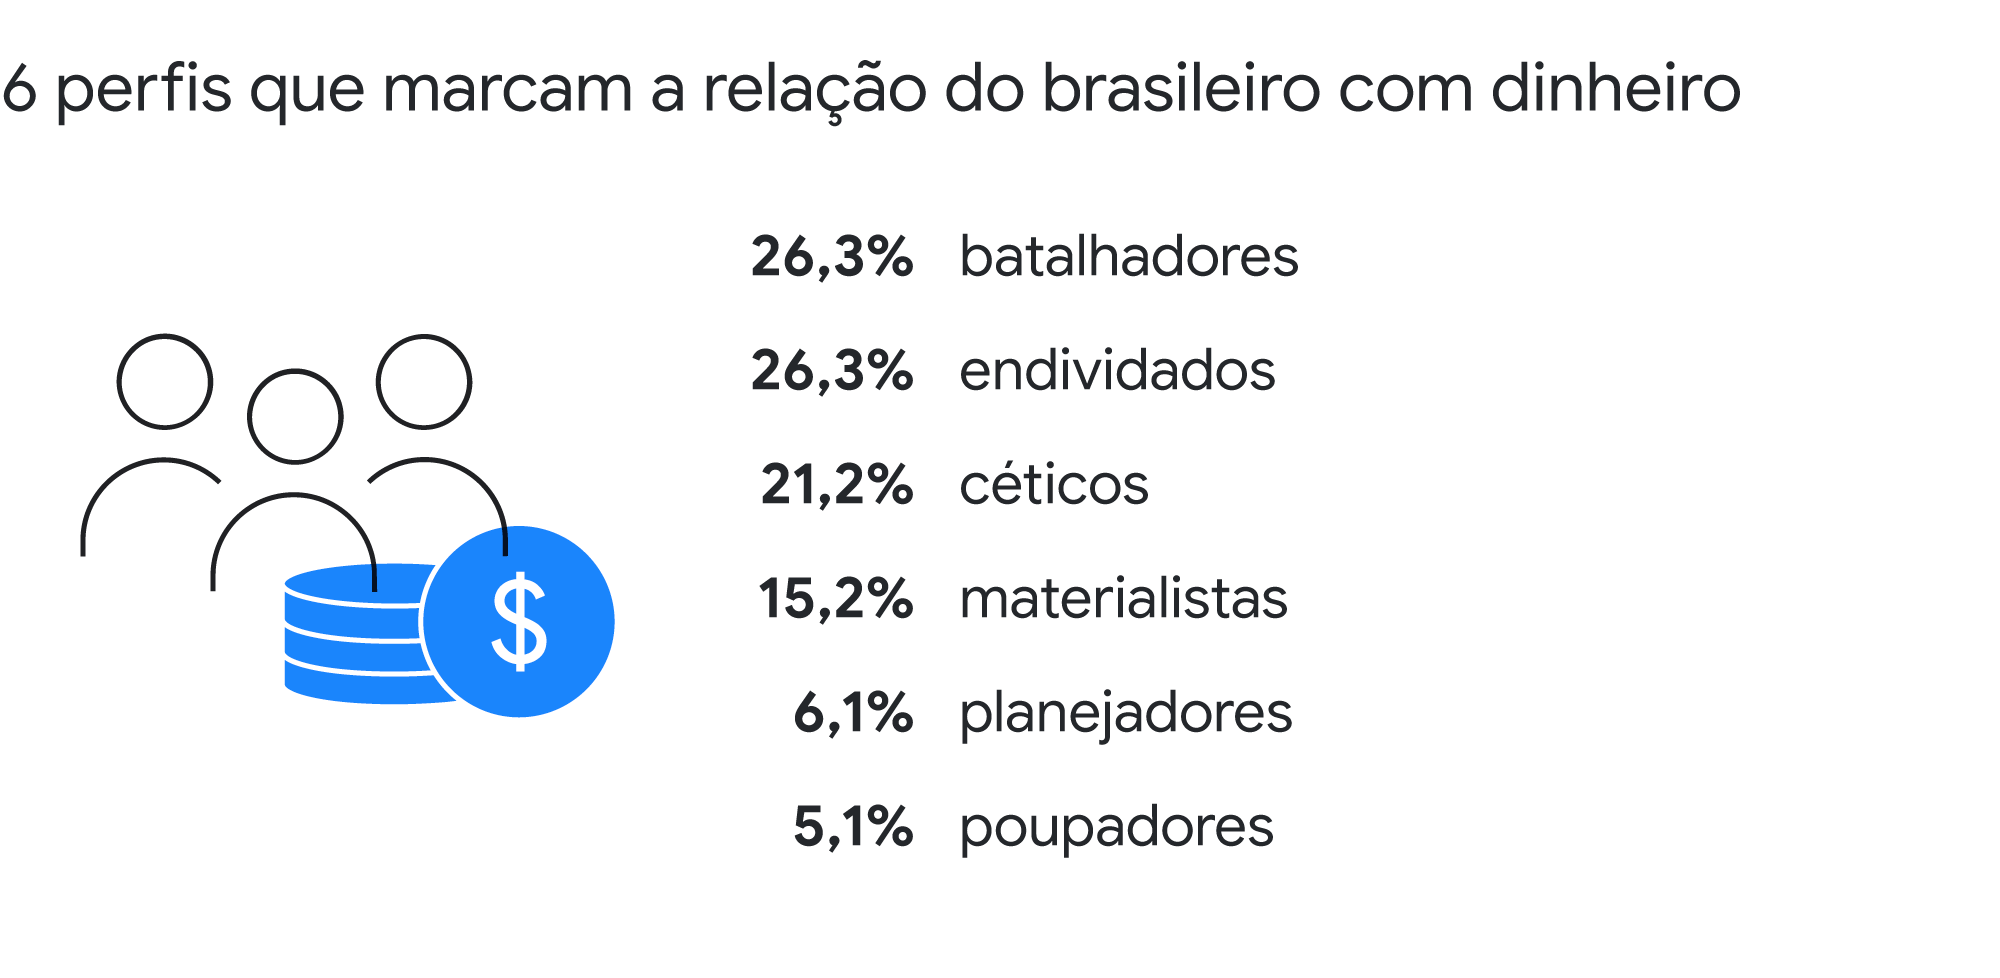 6 perfis que marcam a relação do brasileiro com o dinheiro: 26,3% são batalhadores; 26,3%, endividados; 21,2%, céticos; 15,2% são materialistas; 6,1%, planejadores e 5,1% são poupadores.